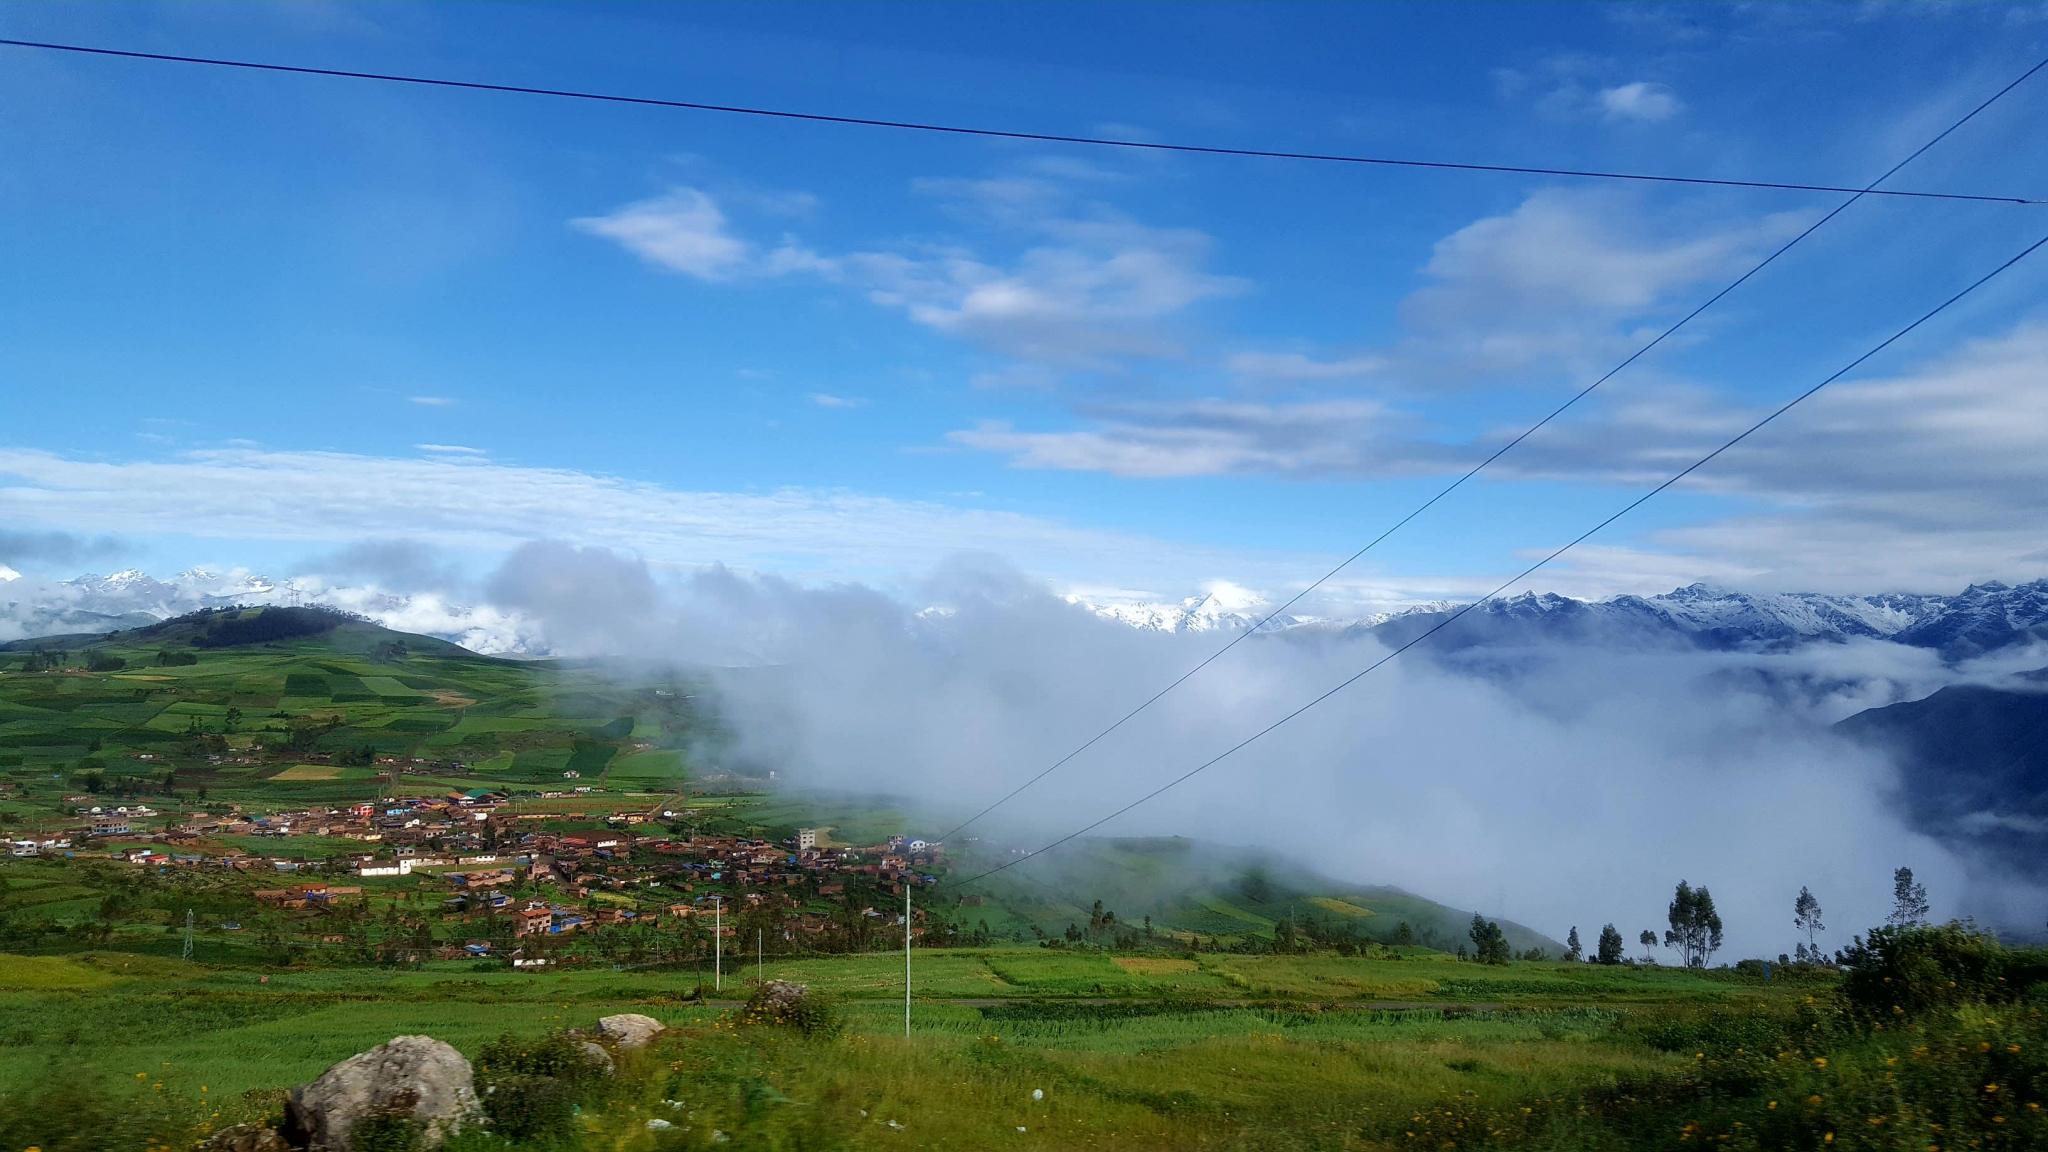 Peru: Lima, Cusco and Machu Picchu-mountains-villages-jpg